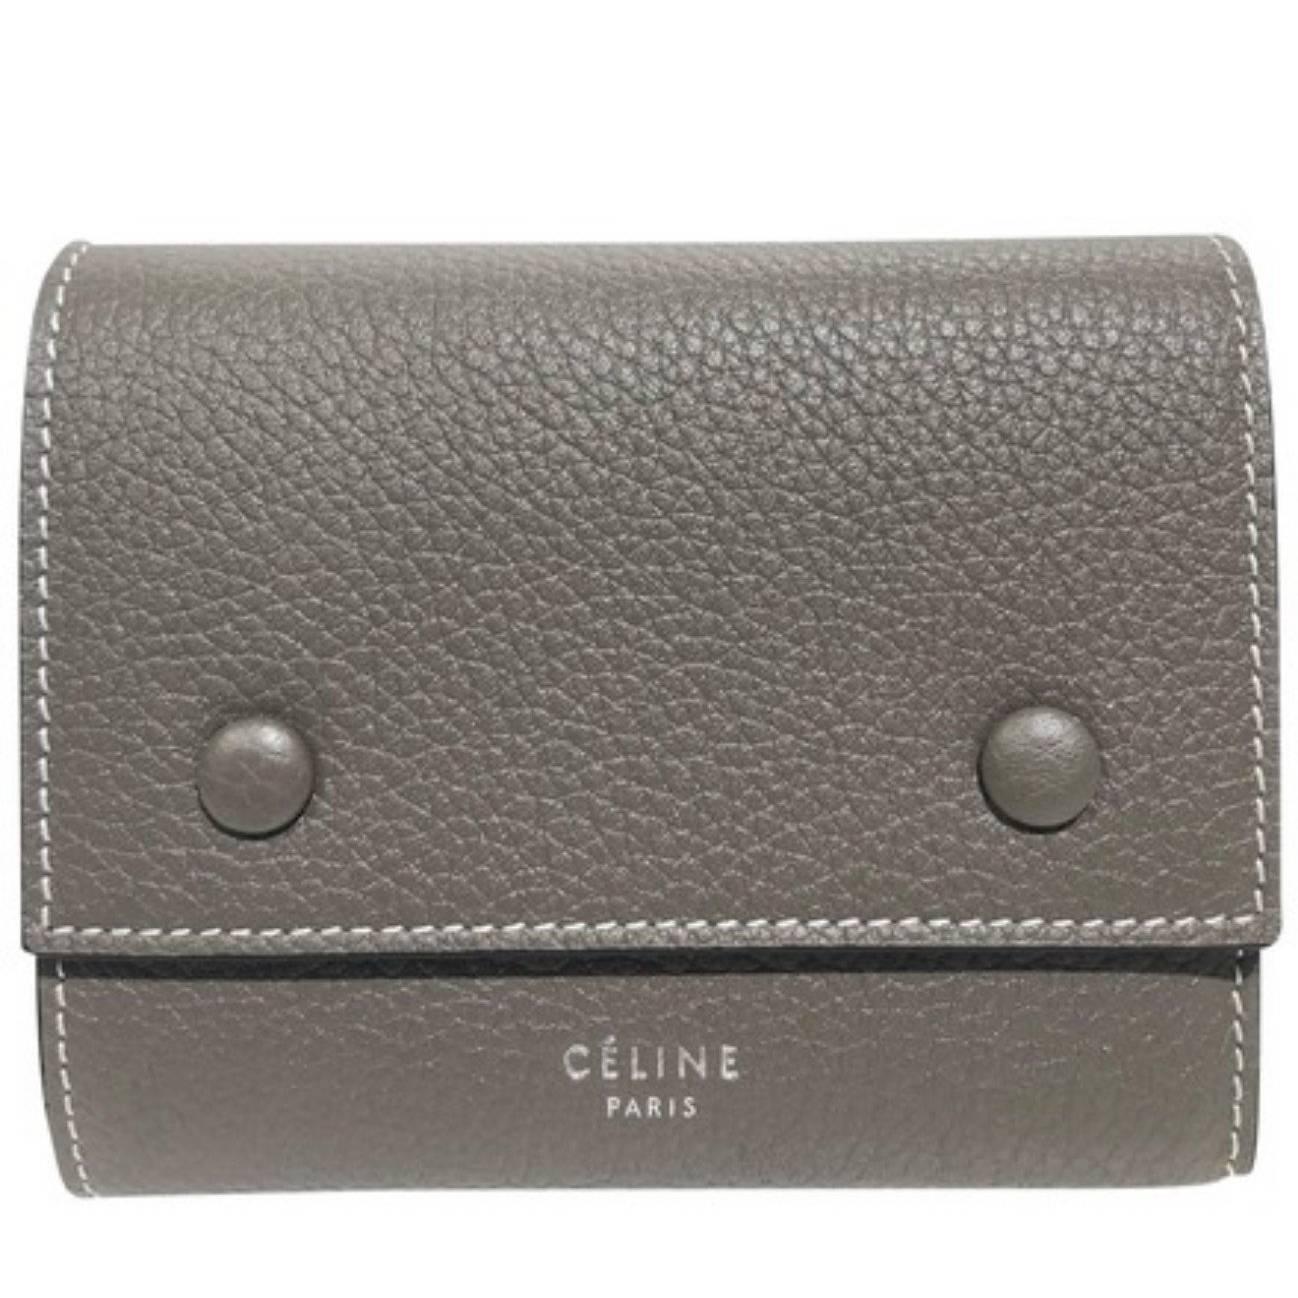 Celine Multifunction Snap Wallet (Size - 6"L x 4"H x 2"W)